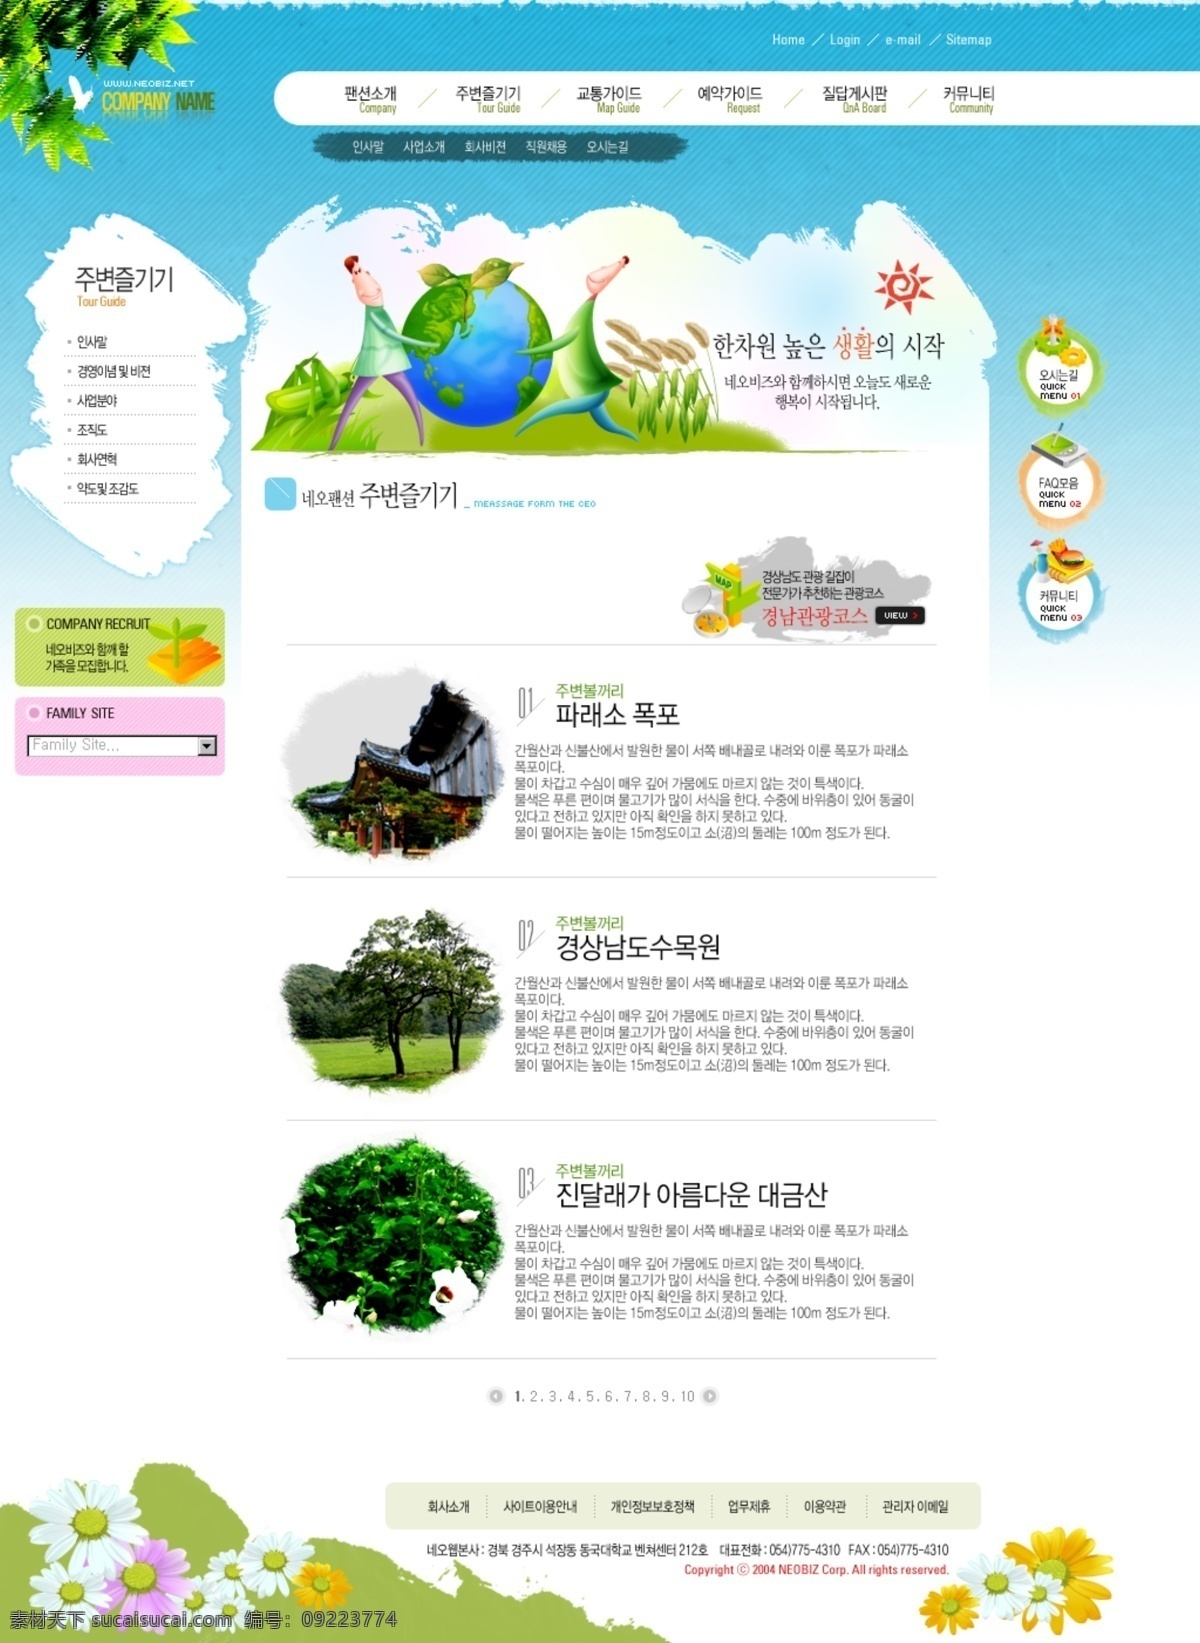 网页 模版 韩国模板 旅游网页设计 网页模板 网页模版 网页设计 网页设计模版 源文件库 网页素材